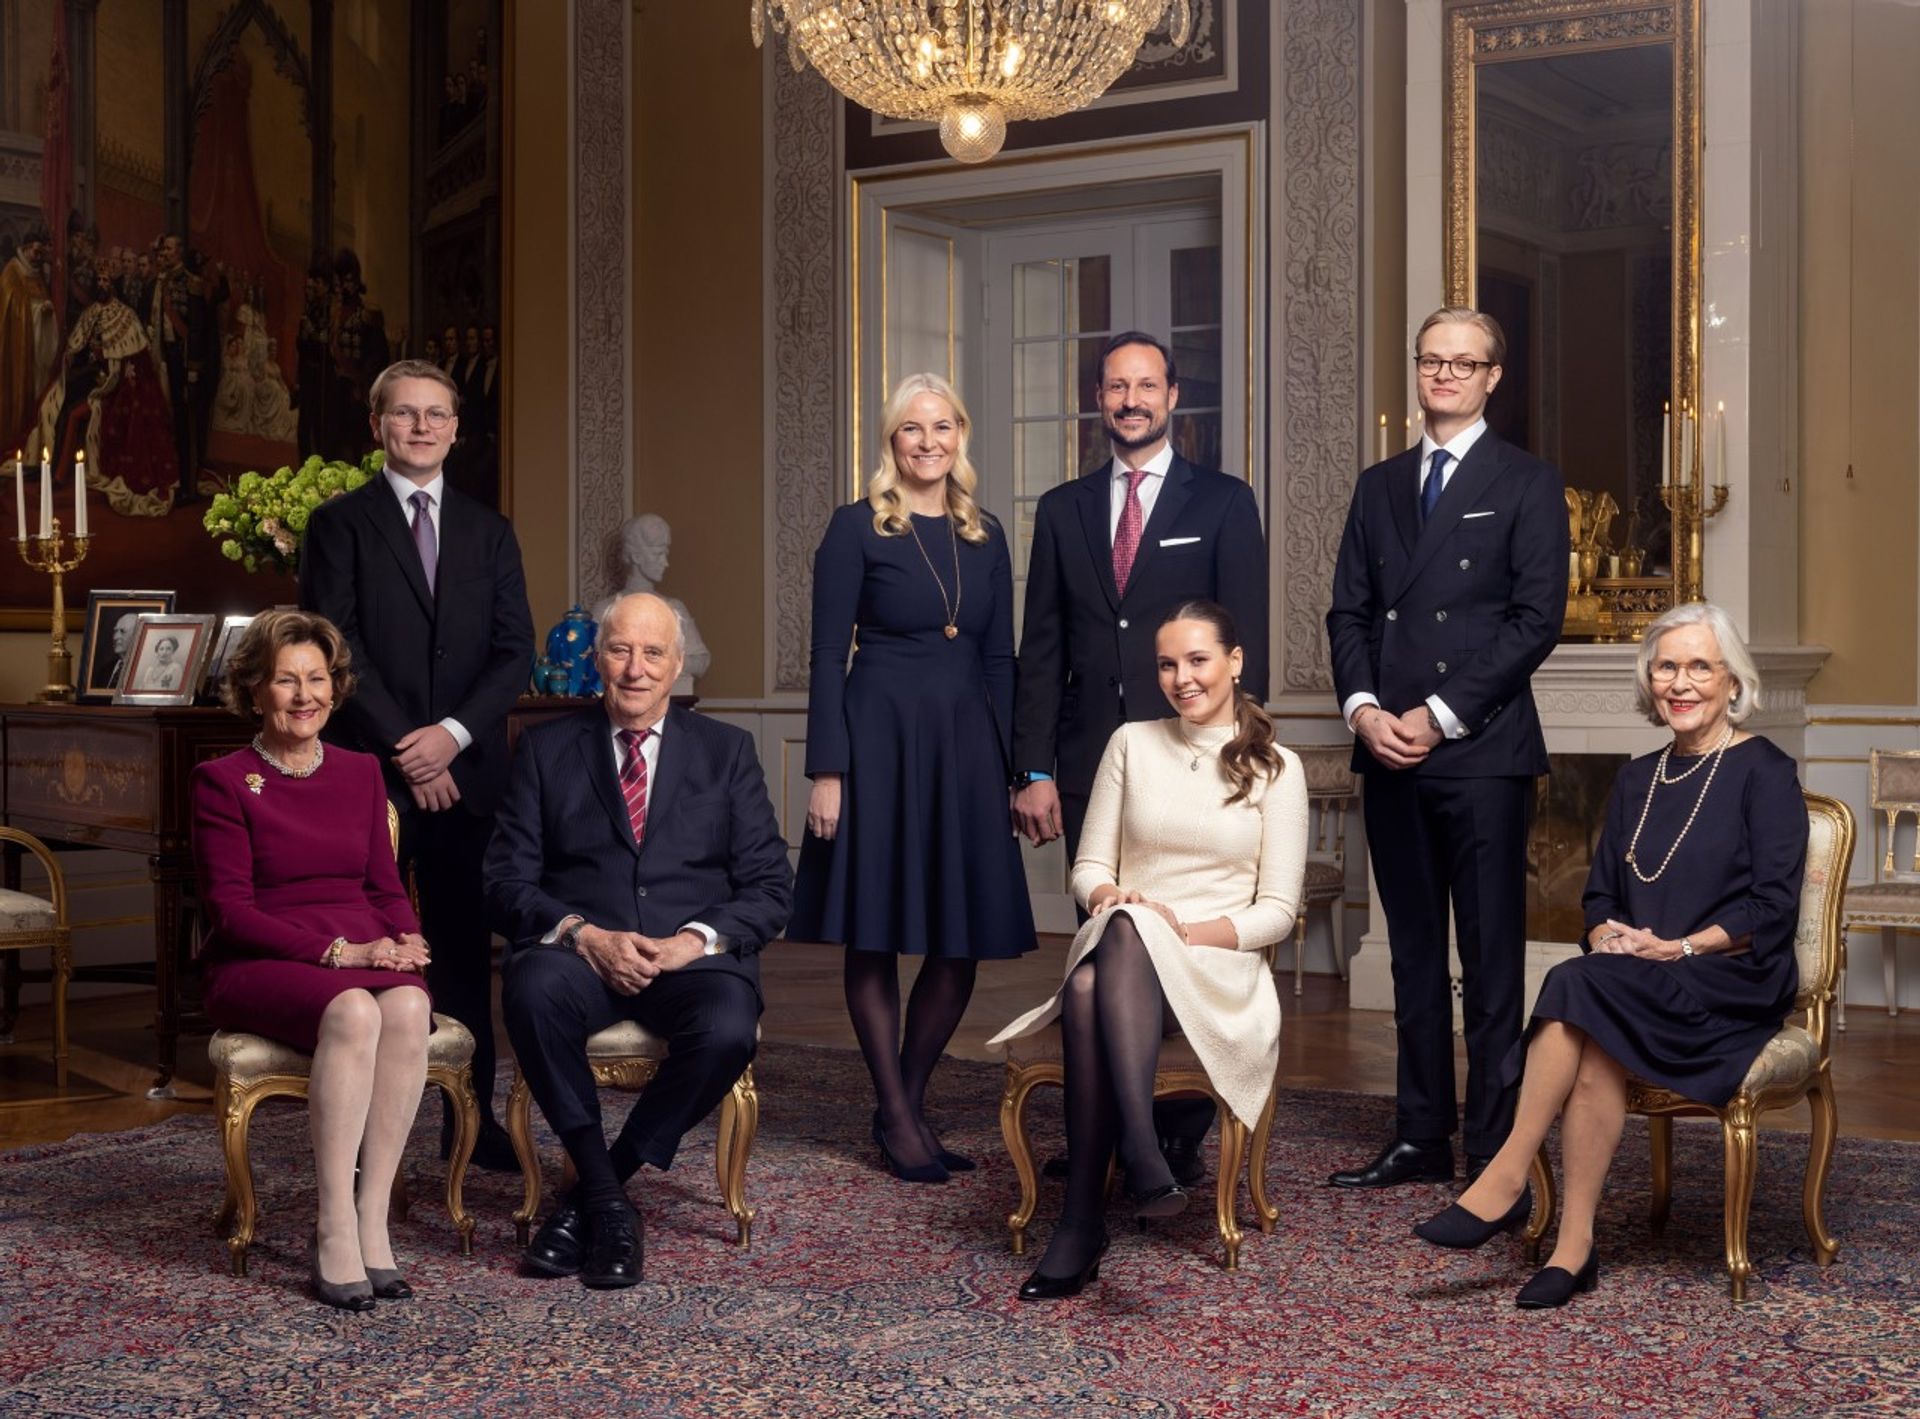 Noorse koninklijke familie